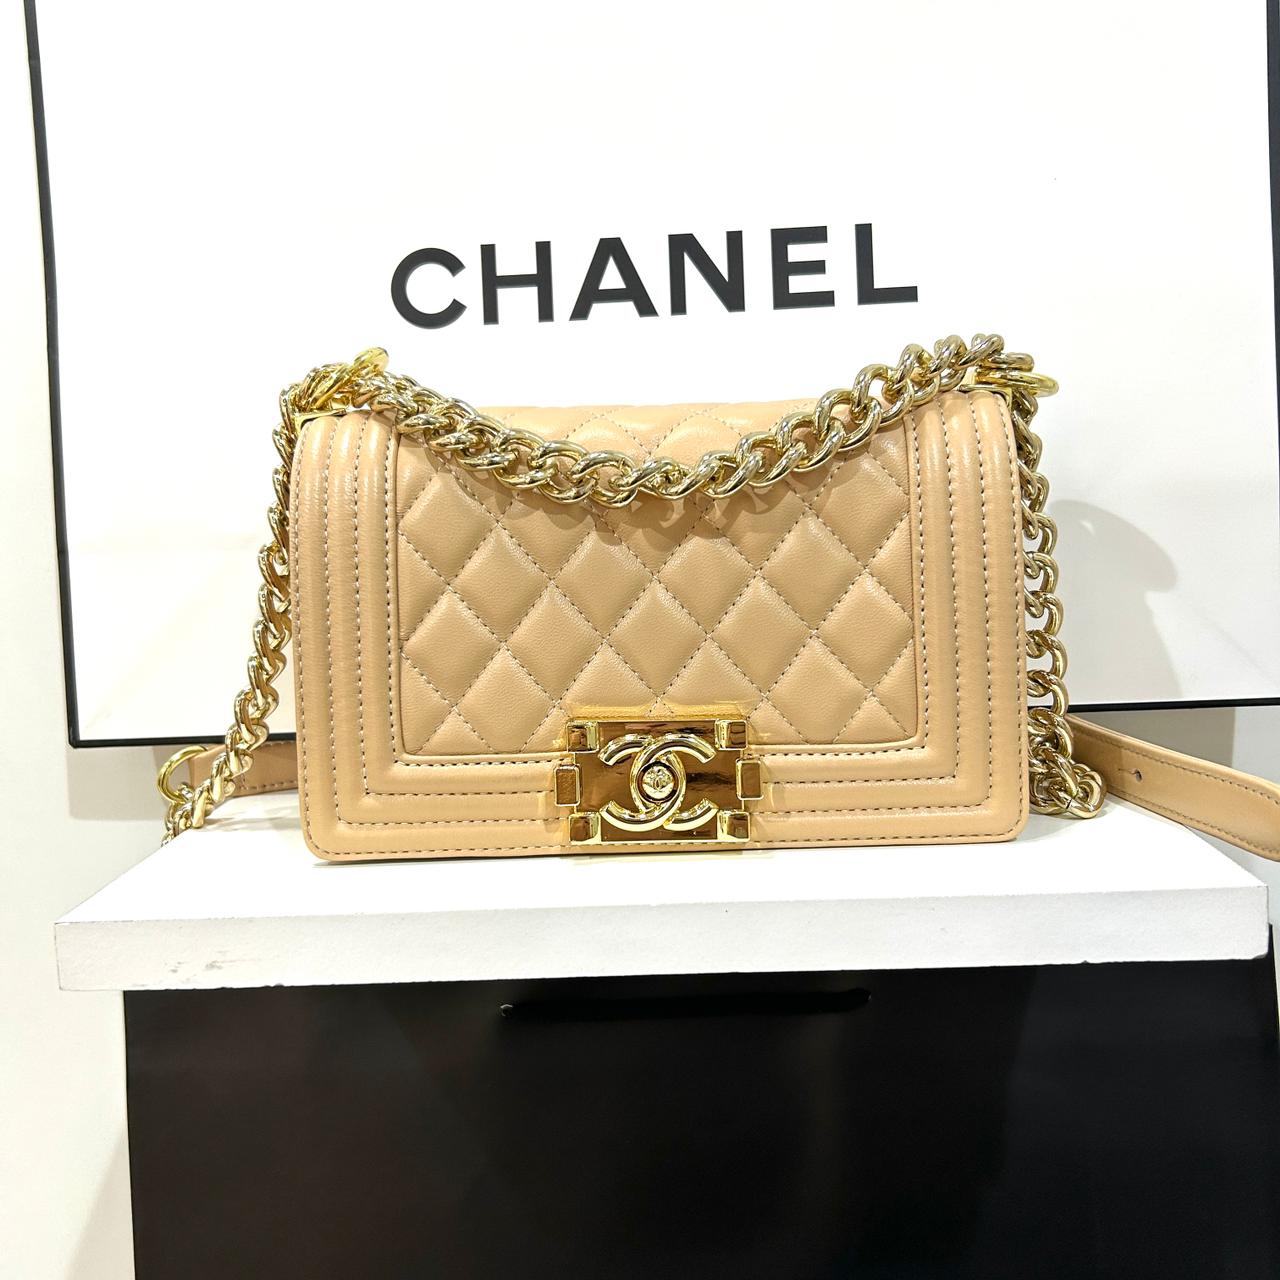 Chanel Boy Small Bag